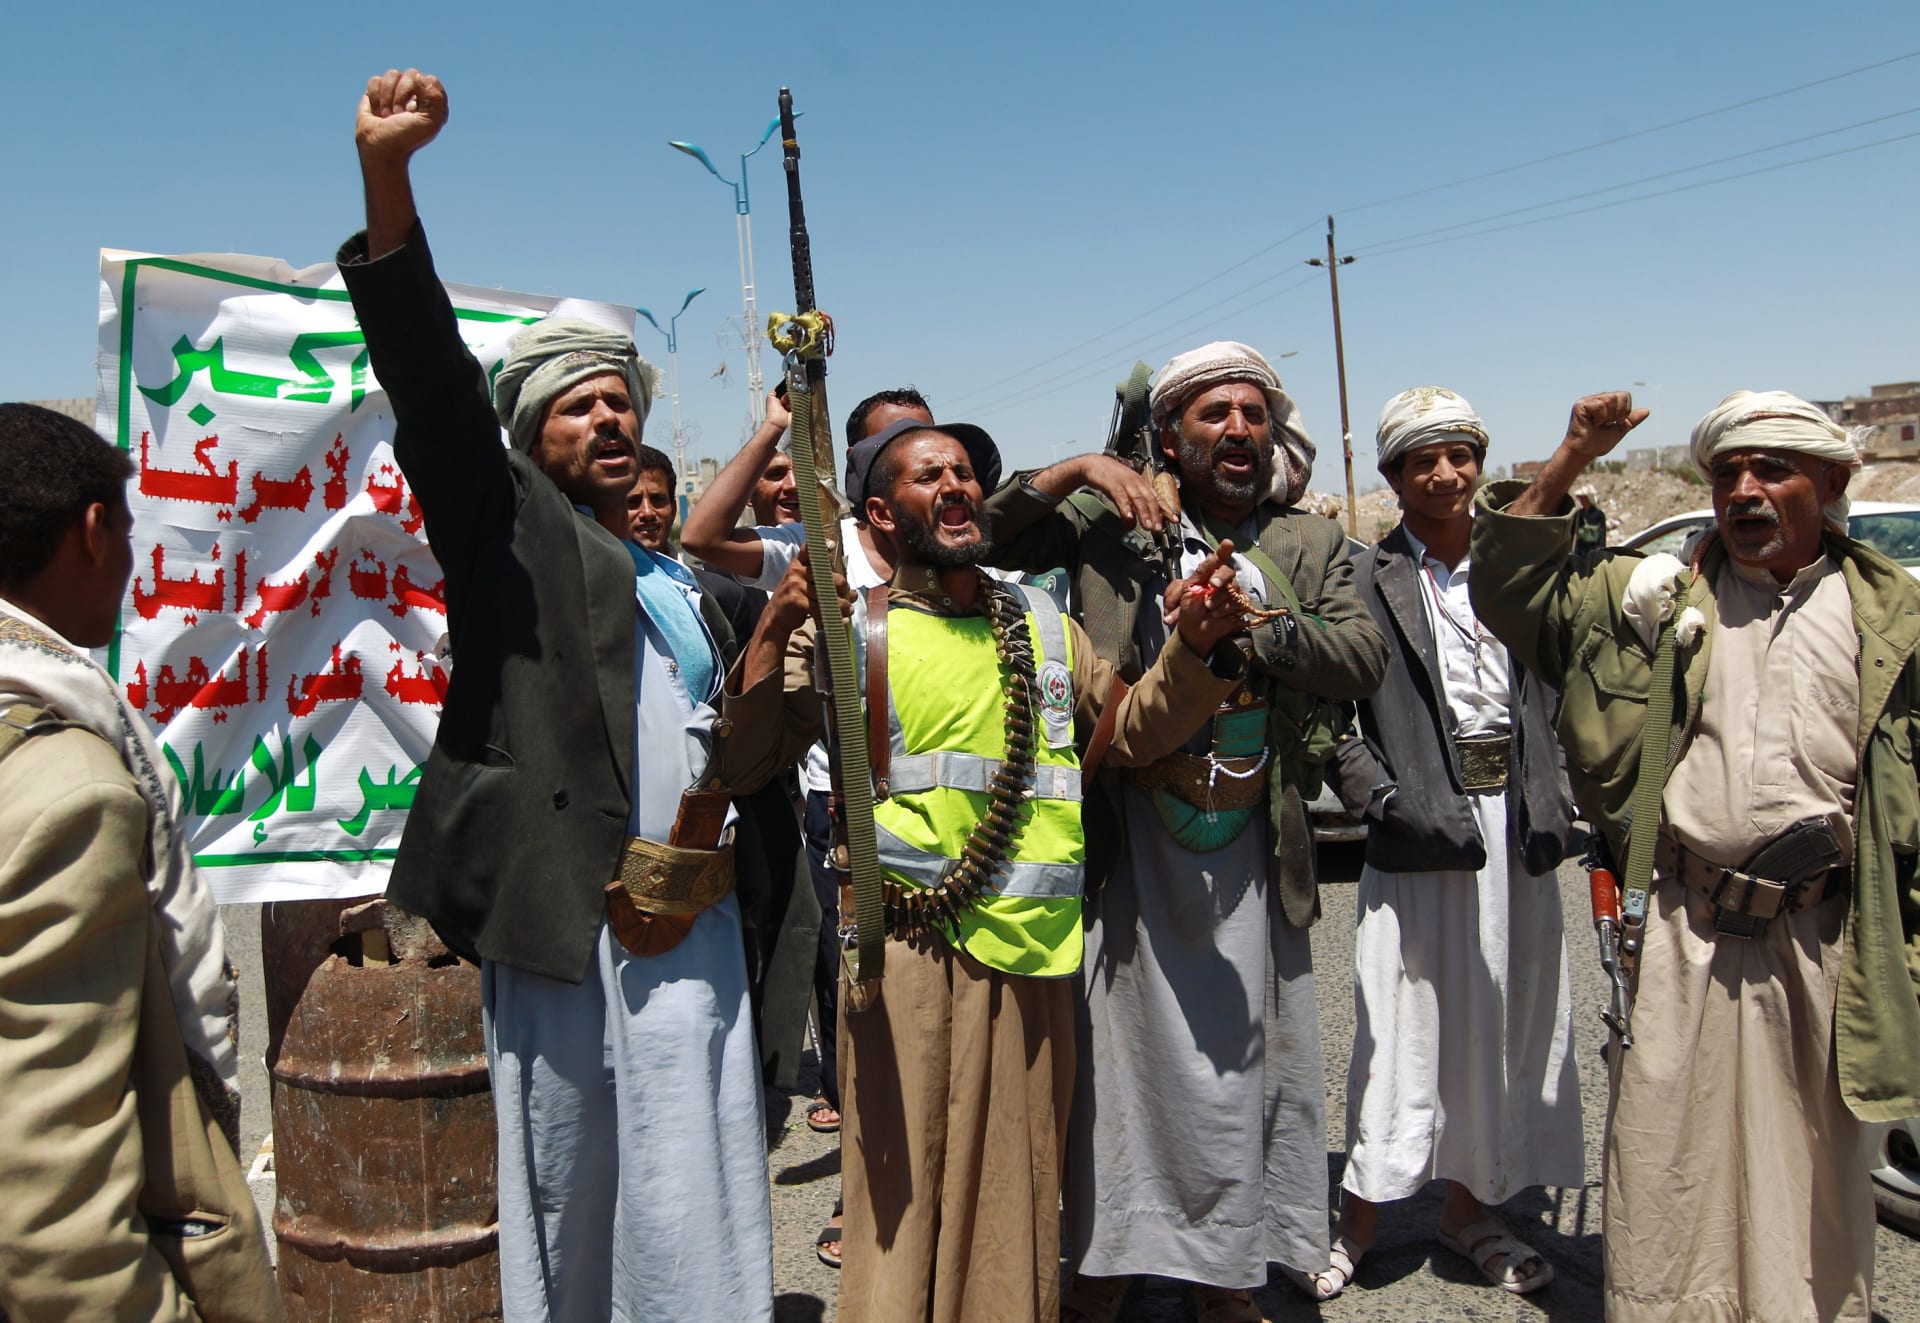 إخوان اليمن يدعون أنصارهم للصبر.. الشرطة والحوثيون "أصدقاء" ووكالات إيرانية تحذر السعودية من انتقال الثورة إليها